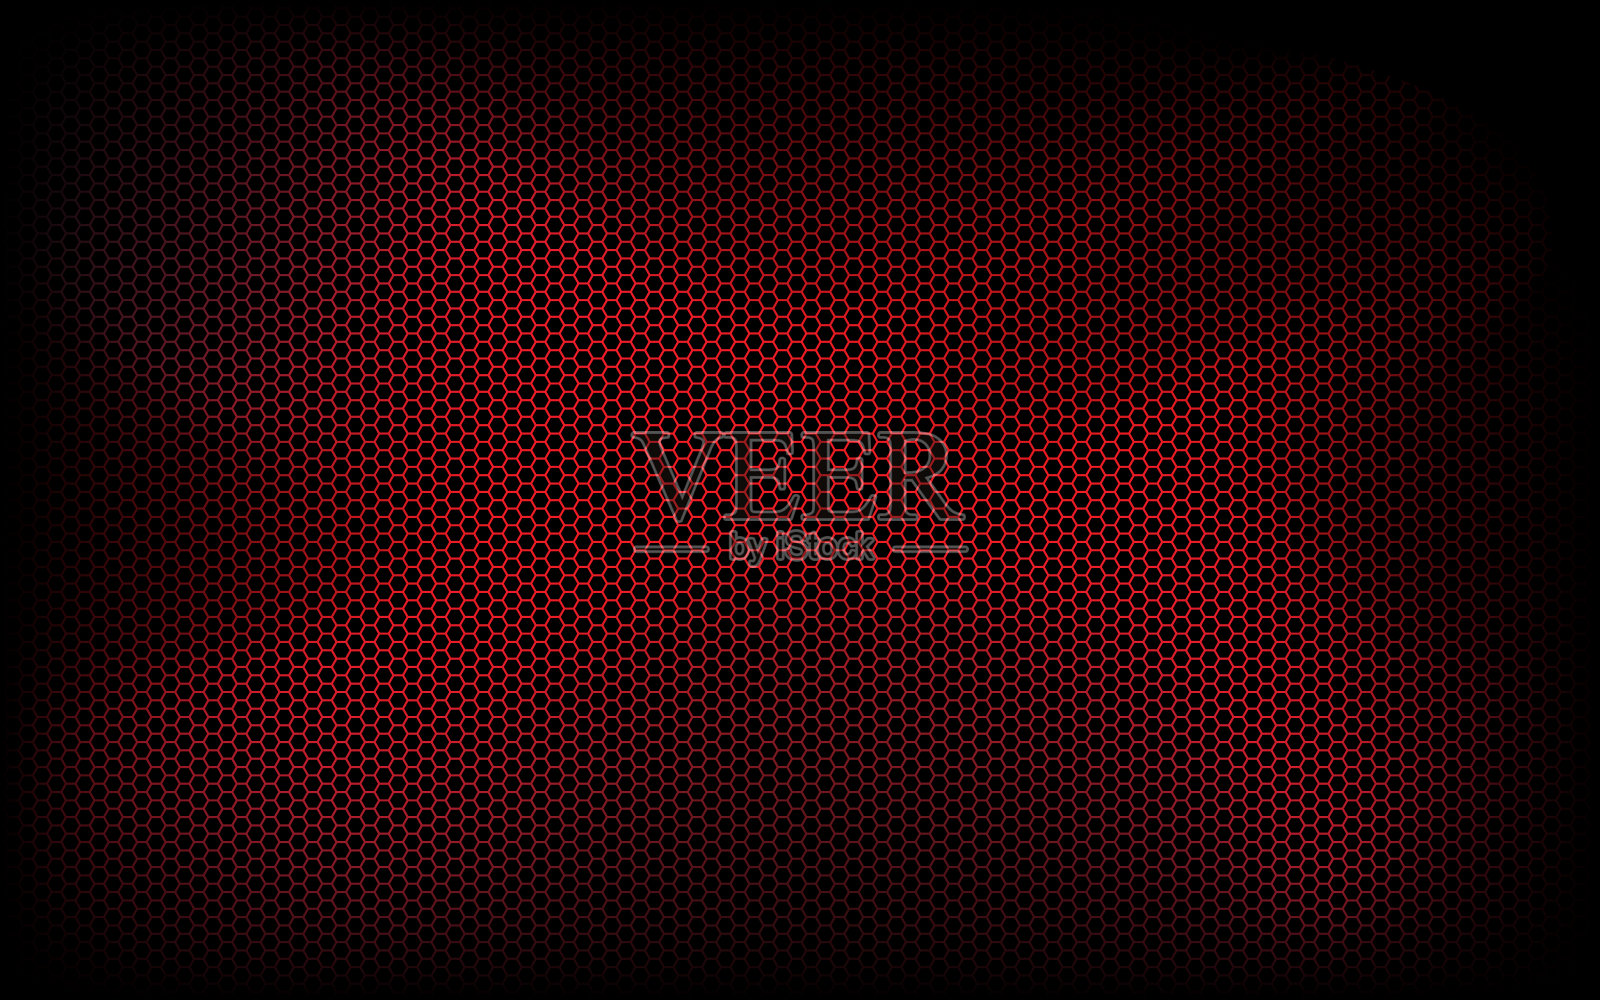 深色现代科技背景与红色六边形网格。抽象的金属几何纹理。简单的矢量图插画图片素材